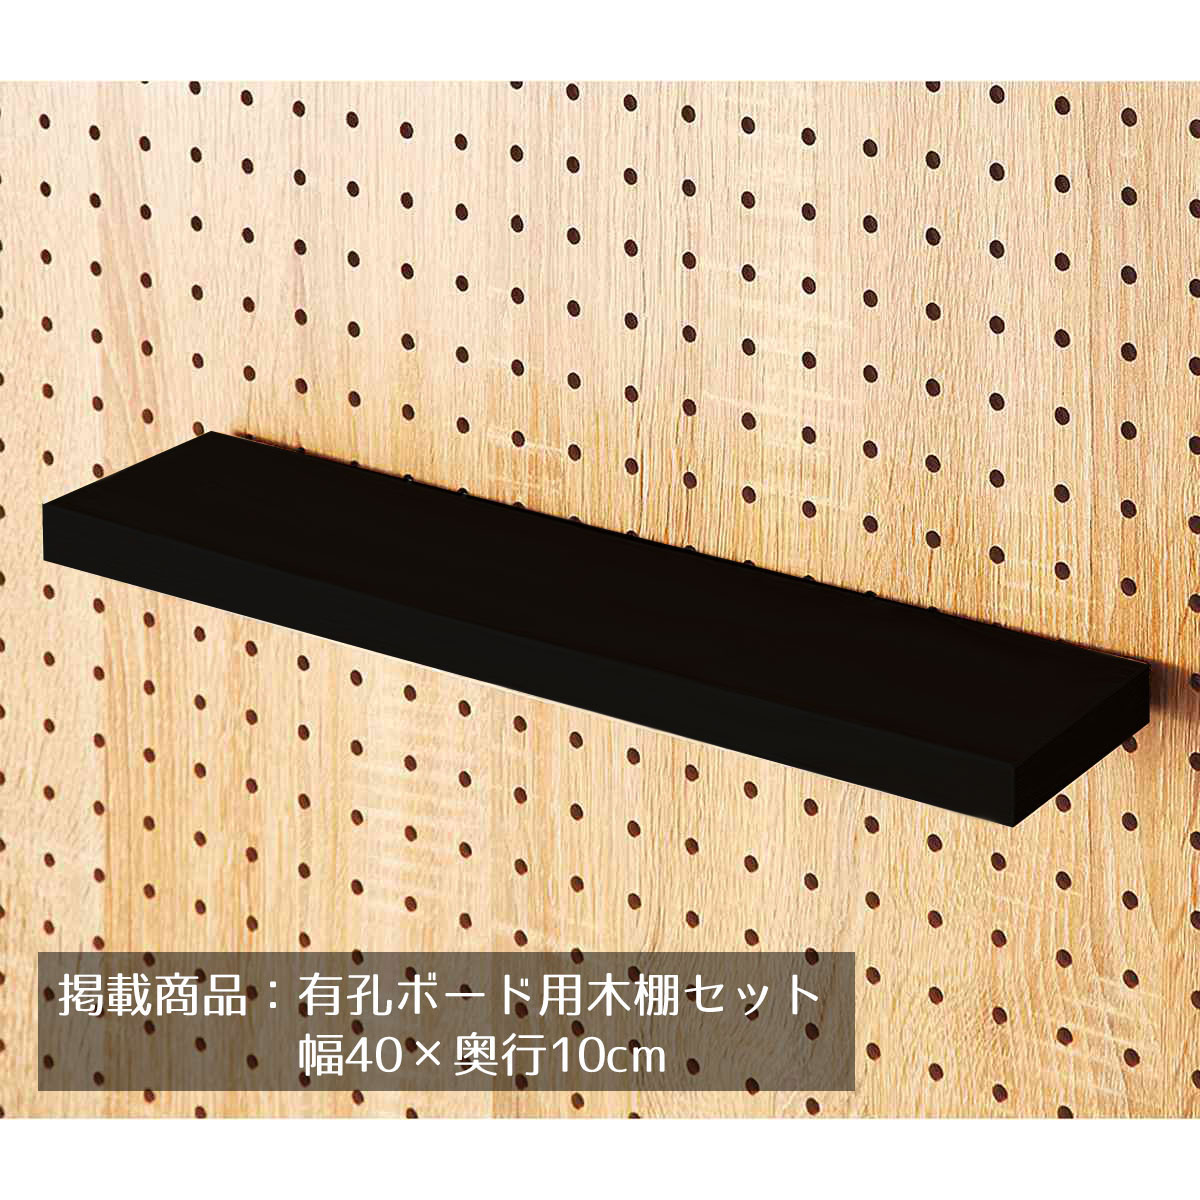 有孔パネル用木棚セット ブラック 幅40×奥行10cm 1セット有孔ボード専用オプションです。有孔パネルの木棚に安価なシェルフタイプ。木棚を乗せるだけで組立不要。送料無料 有孔ボード パンチングボード ペグボード 棚 壁面 収納